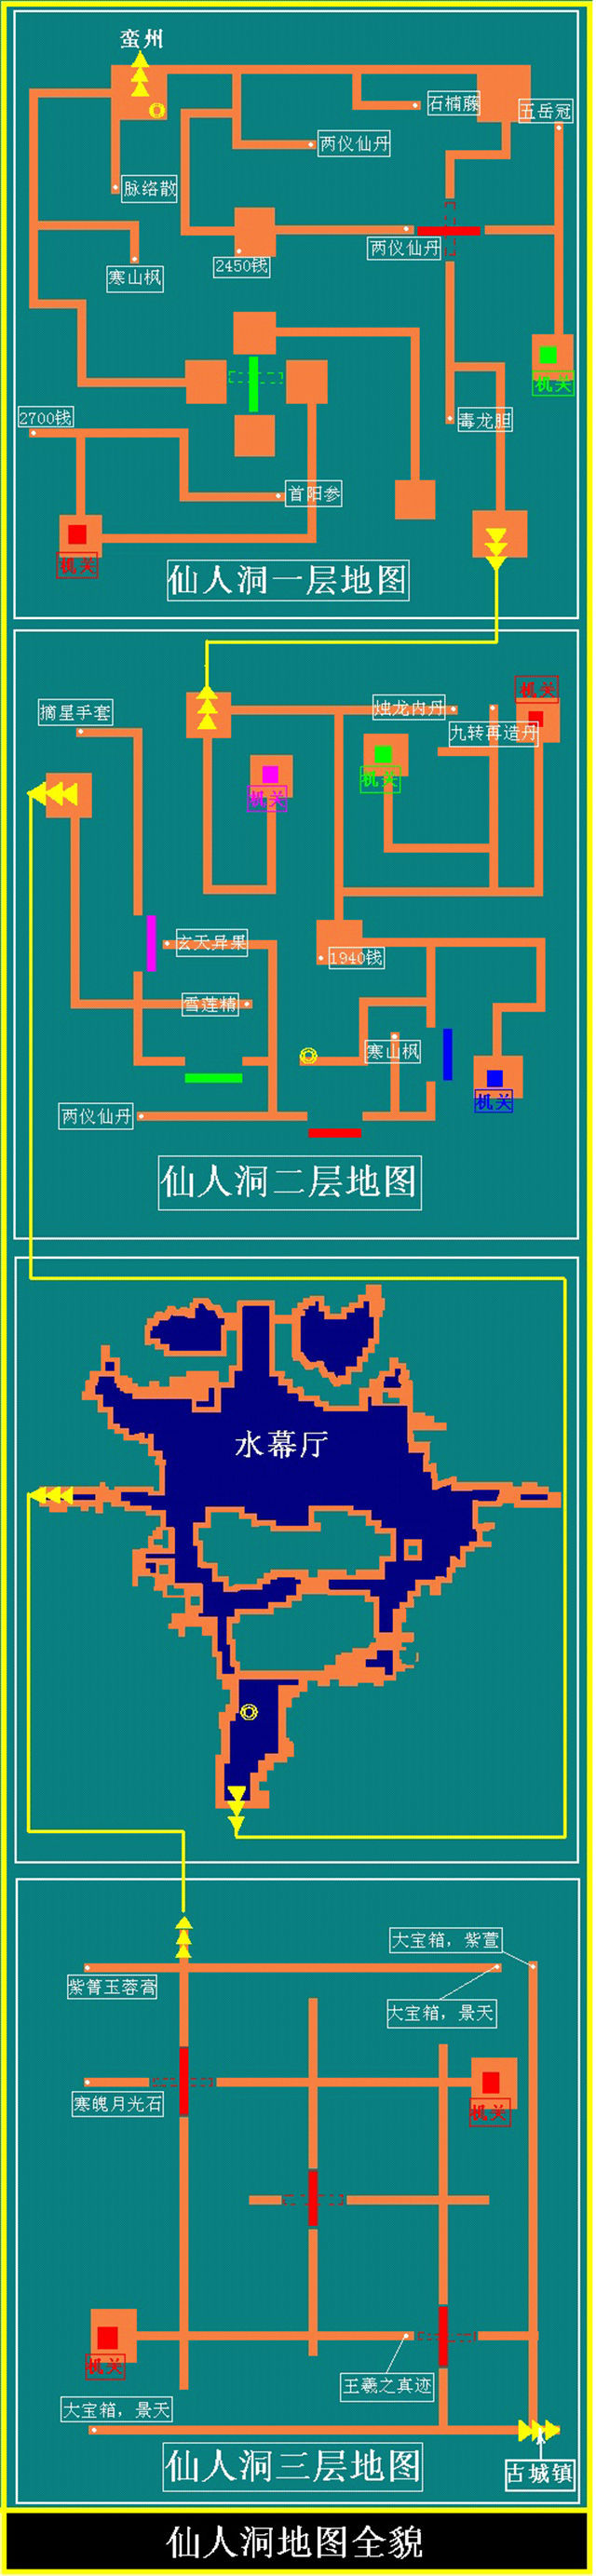 仙剑三灵山仙人洞地图图片